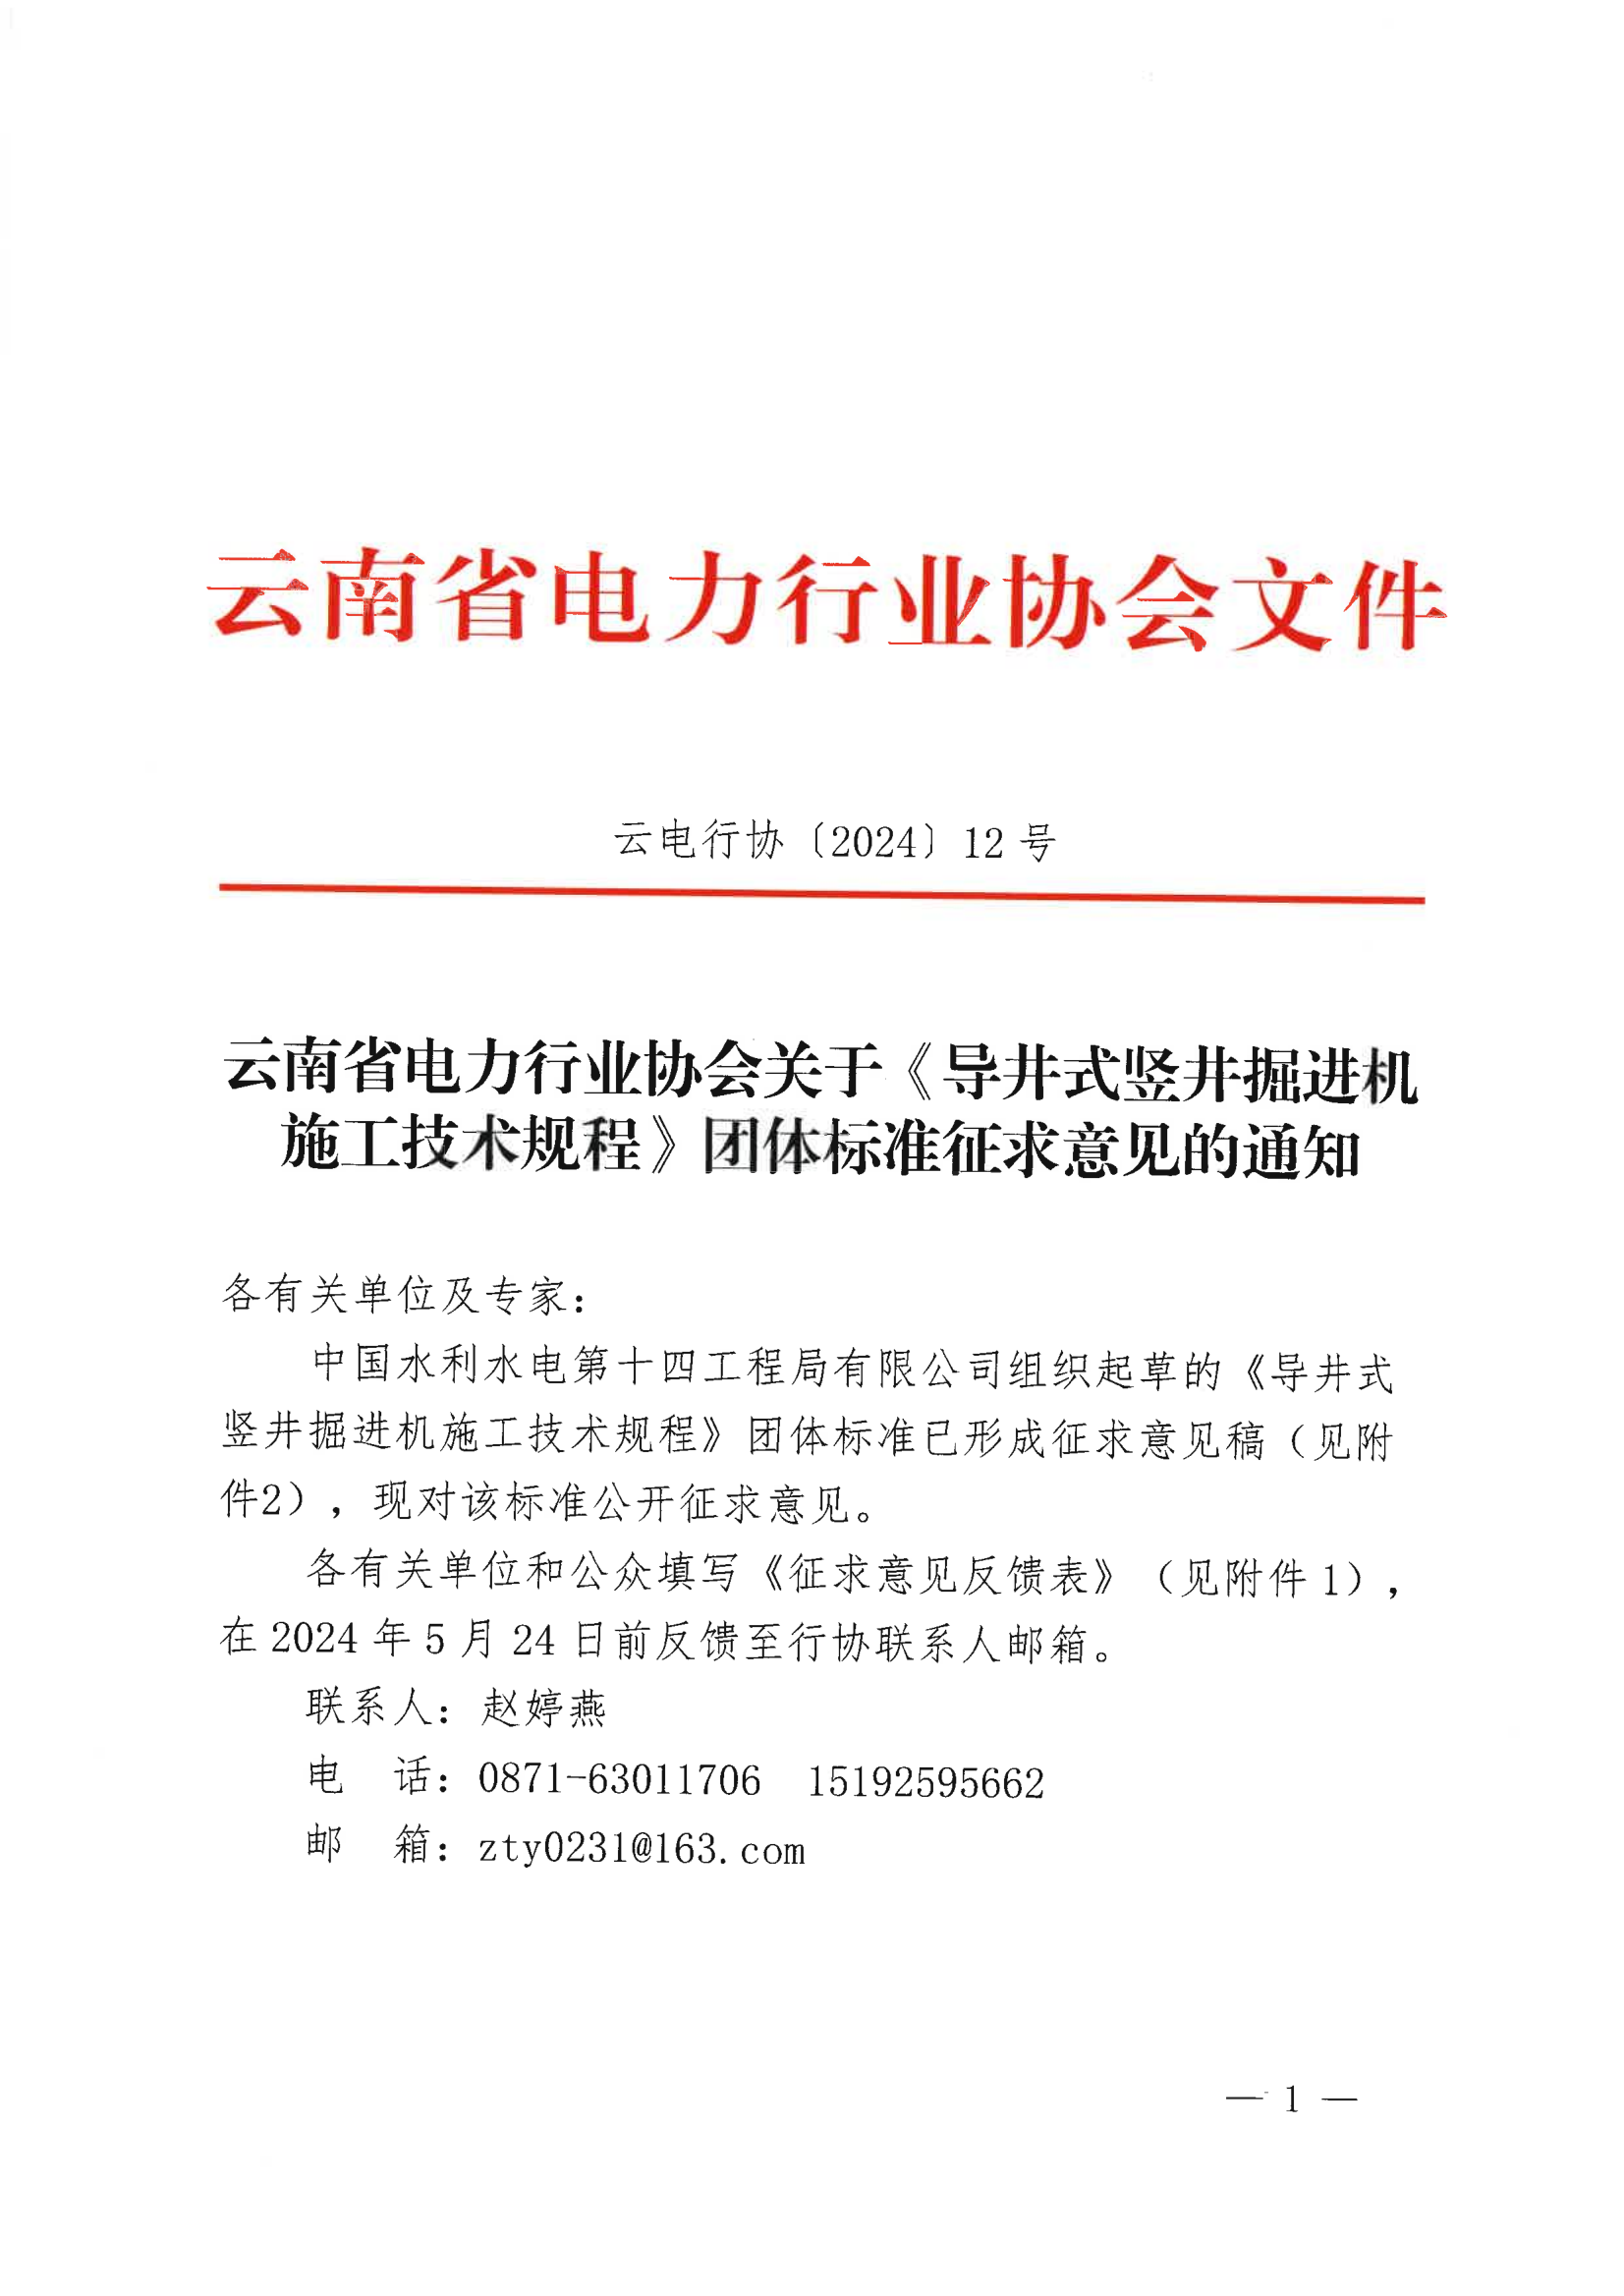 云南省电力行业协会关于《导井式竖井掘进机施工技术规程》团体标准征求意见的通知_1.png